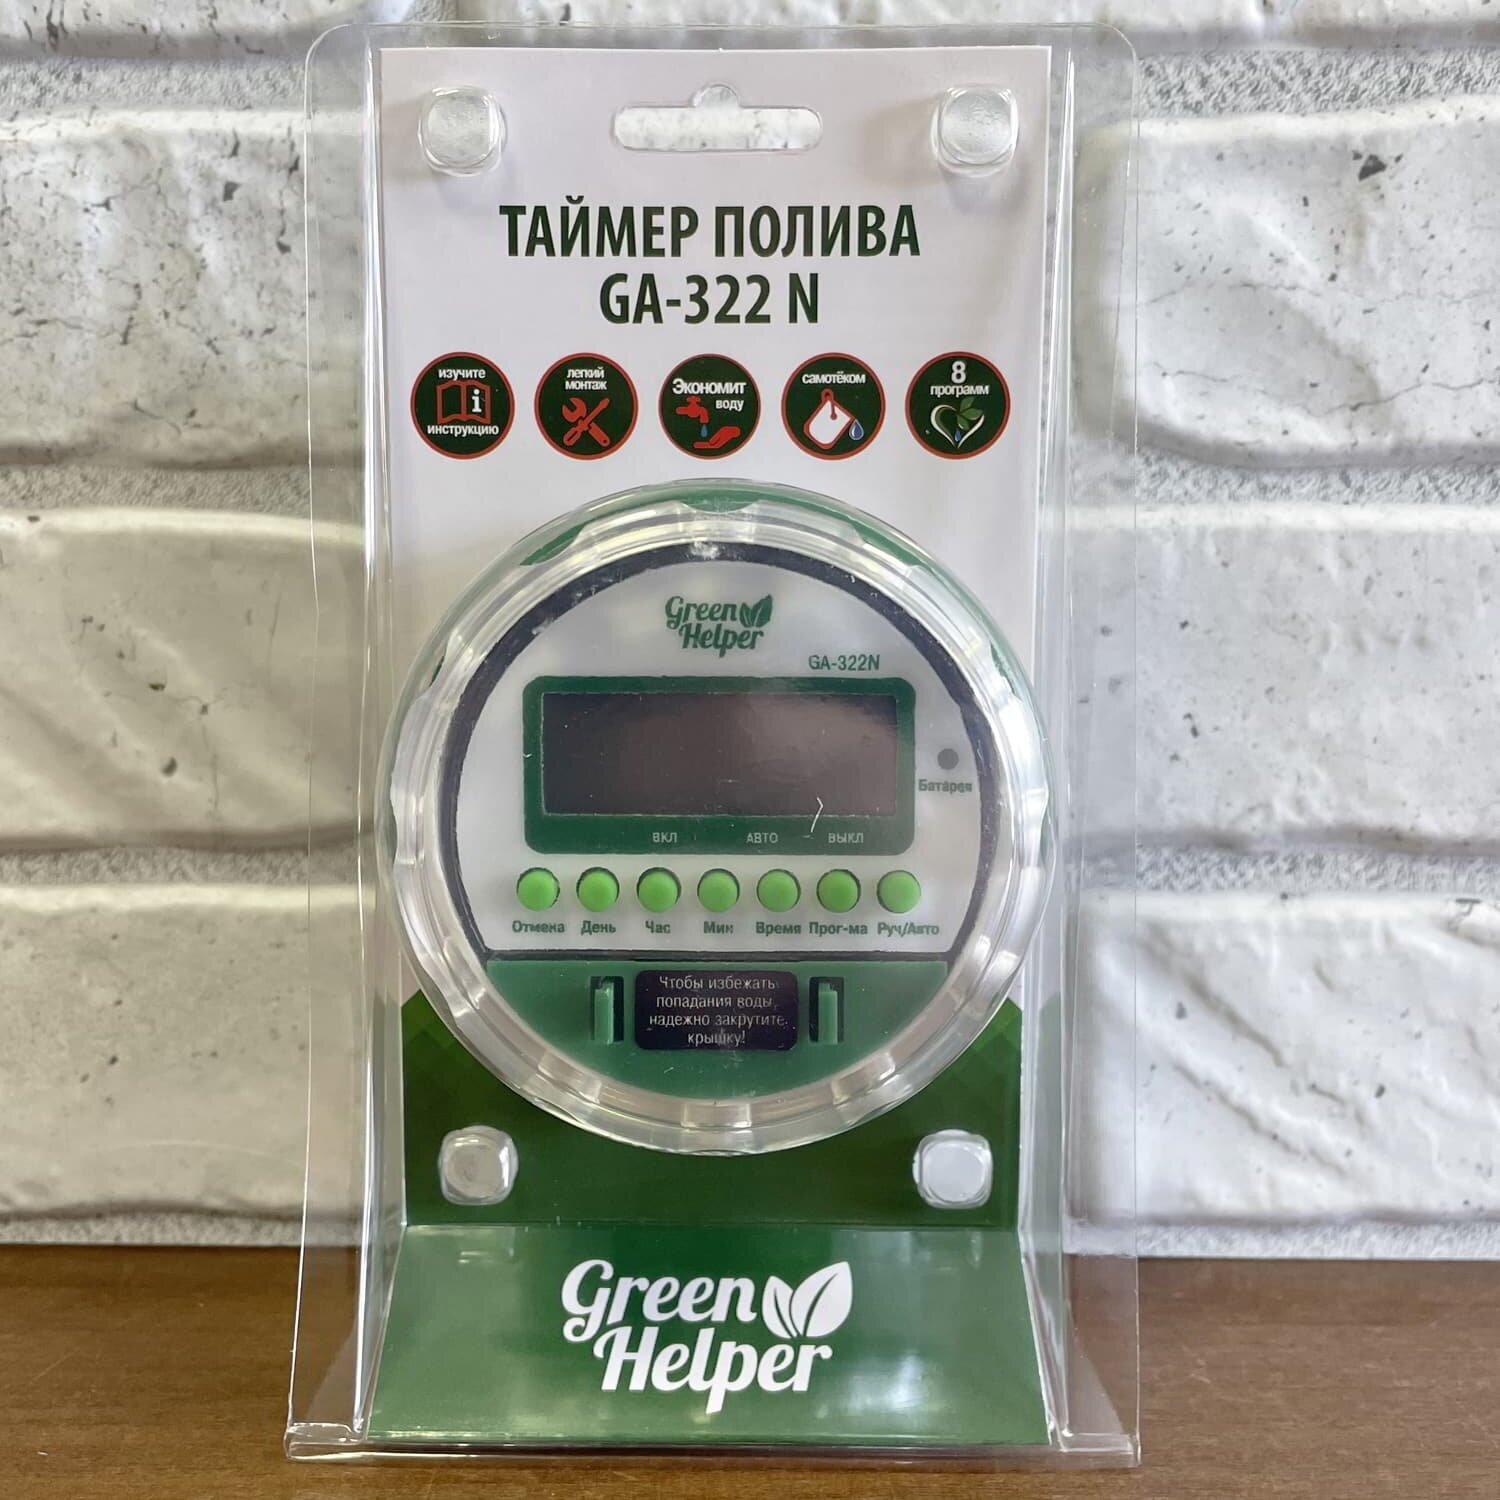 Таймер полива Green Helper GA-322N (ЖК-дисплей, настройка частоты и длительности полива, шаровой исполнительный механизм, + ЭКО ручка)